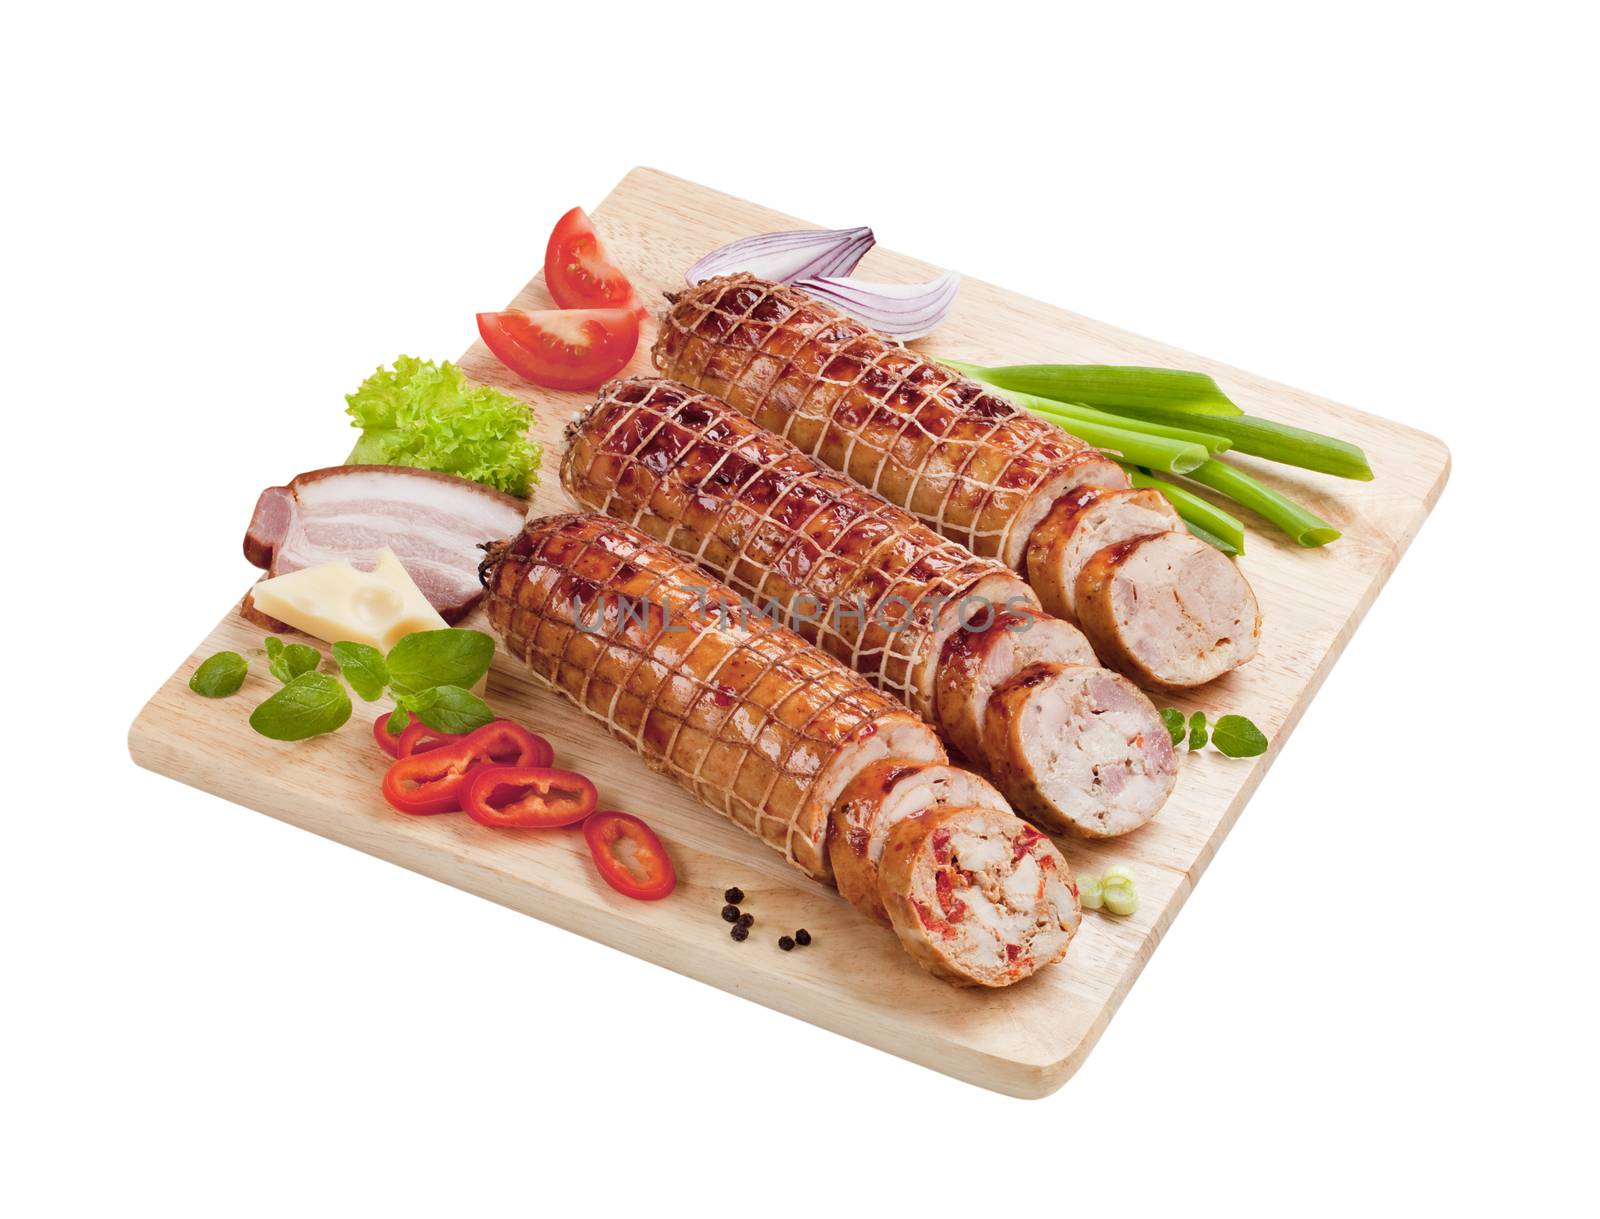 Roast pork and turkey rolls on a cutting board